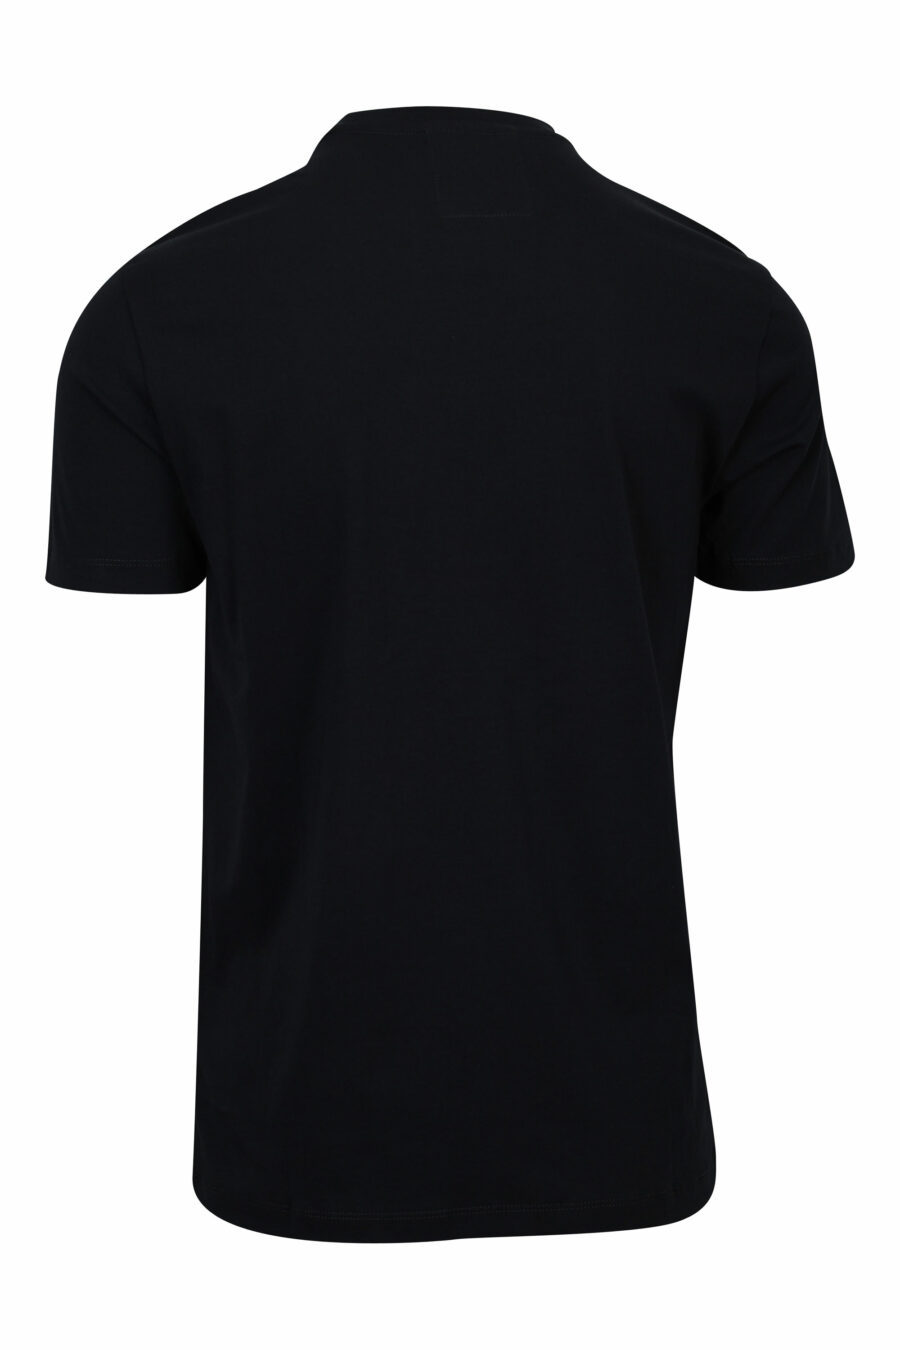 Camiseta azul oscuro con maxilogo blanco - 8056861983909 1